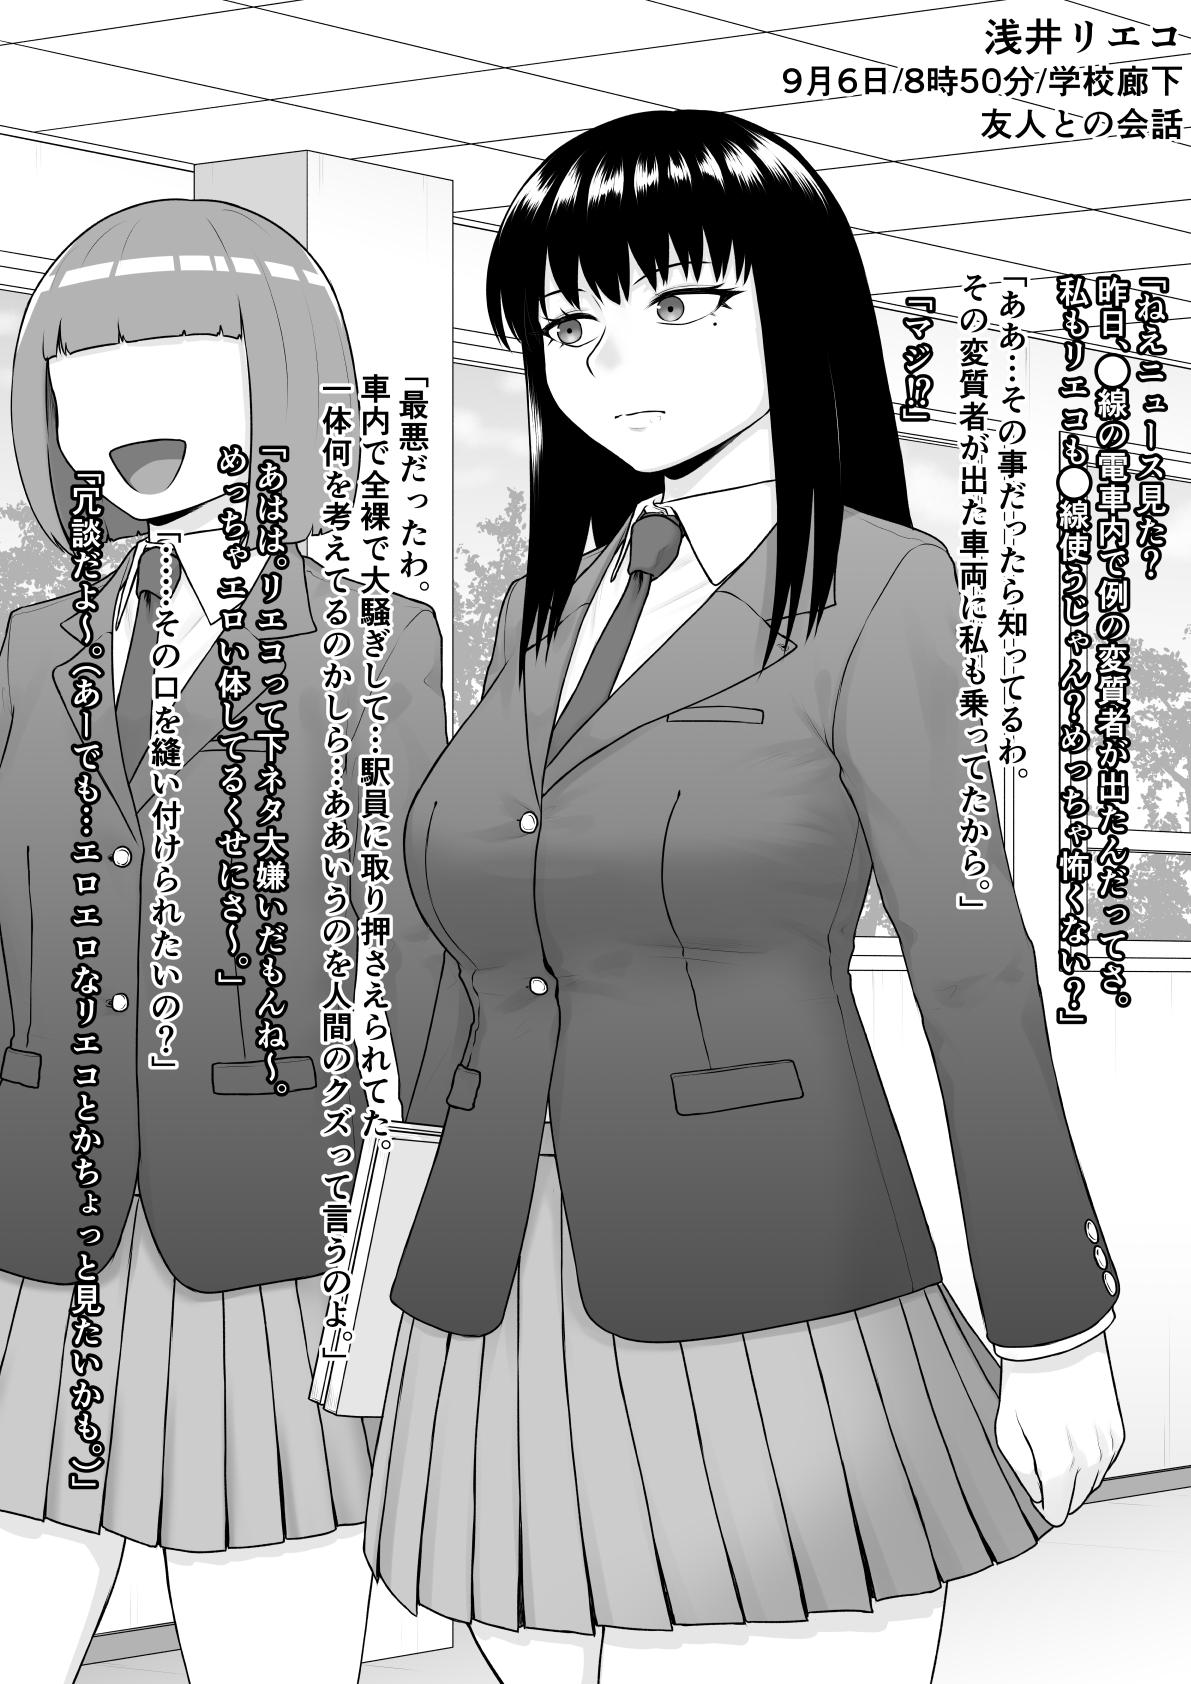 Humiliation Pov Hentai ni Naru Watashi e Cfnm - Page 2